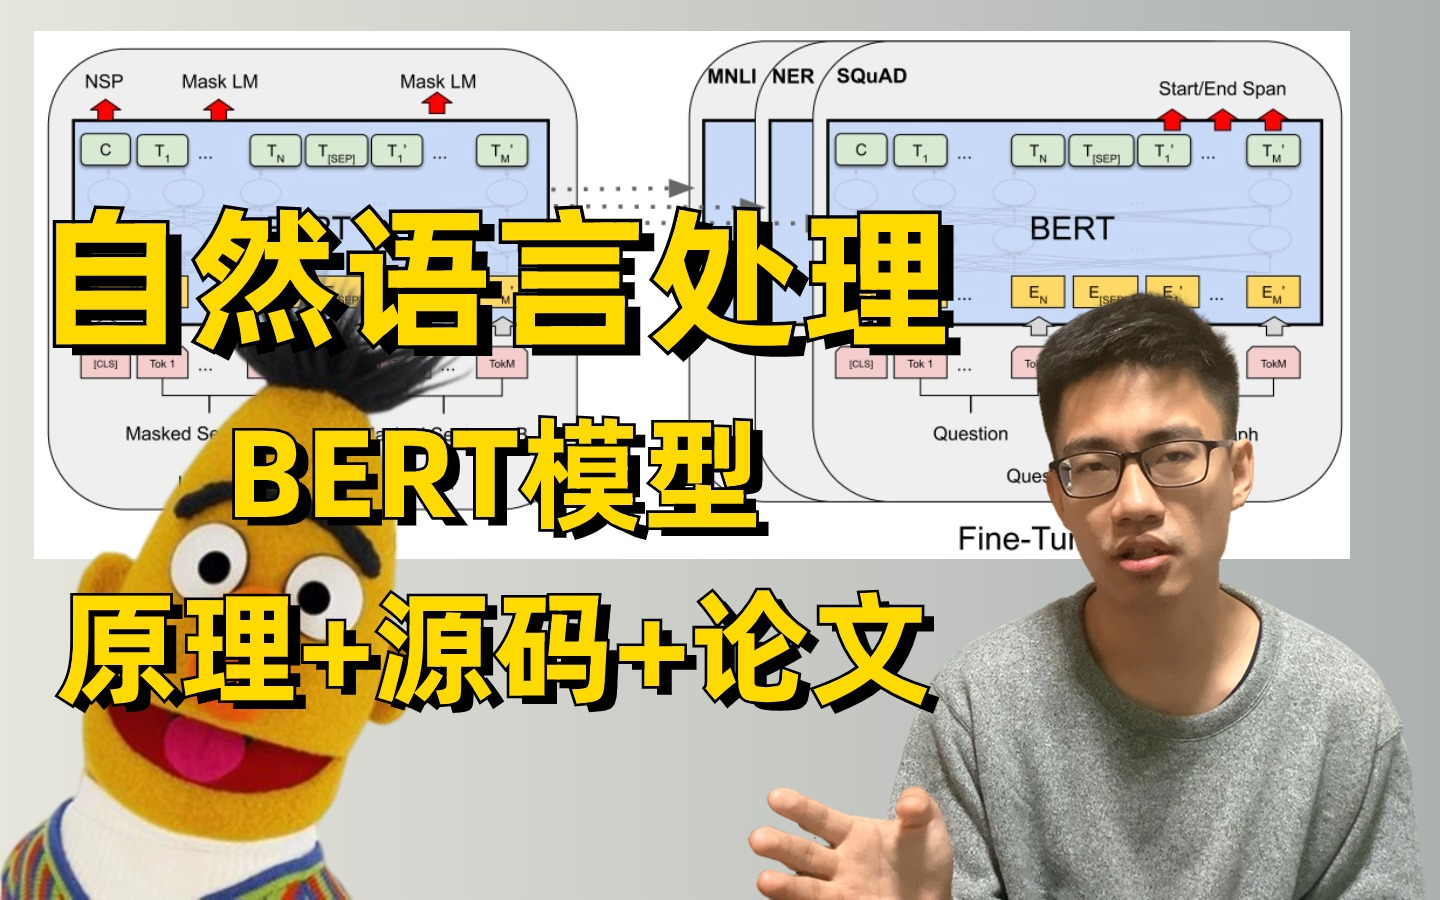 迪哥10小时精讲！自然语言处理最著名模型：BERT 原理+源码+论文 实战中文情感分析与命名实体识别！